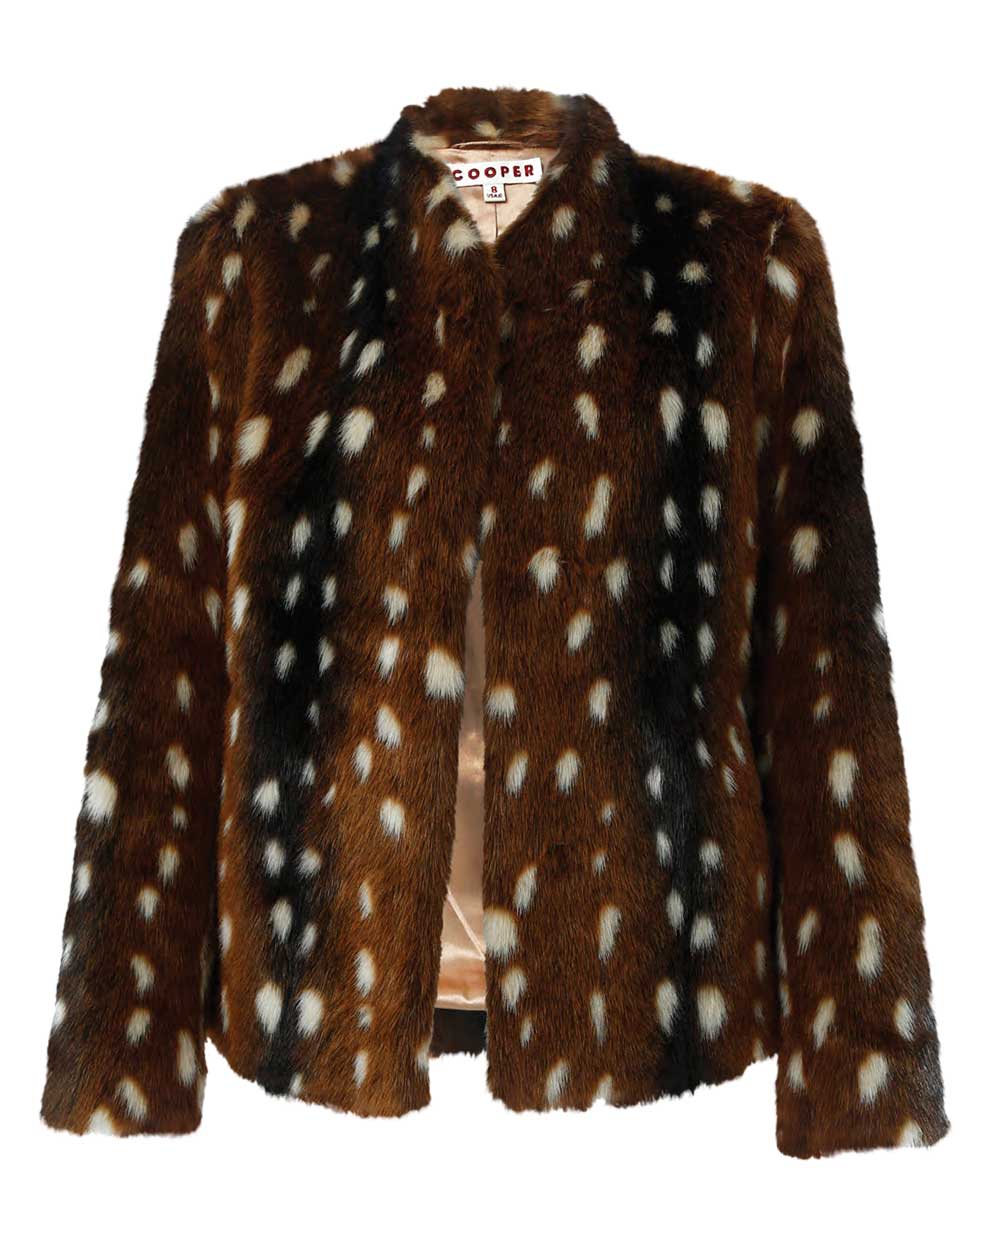 Cooper jacket, $449